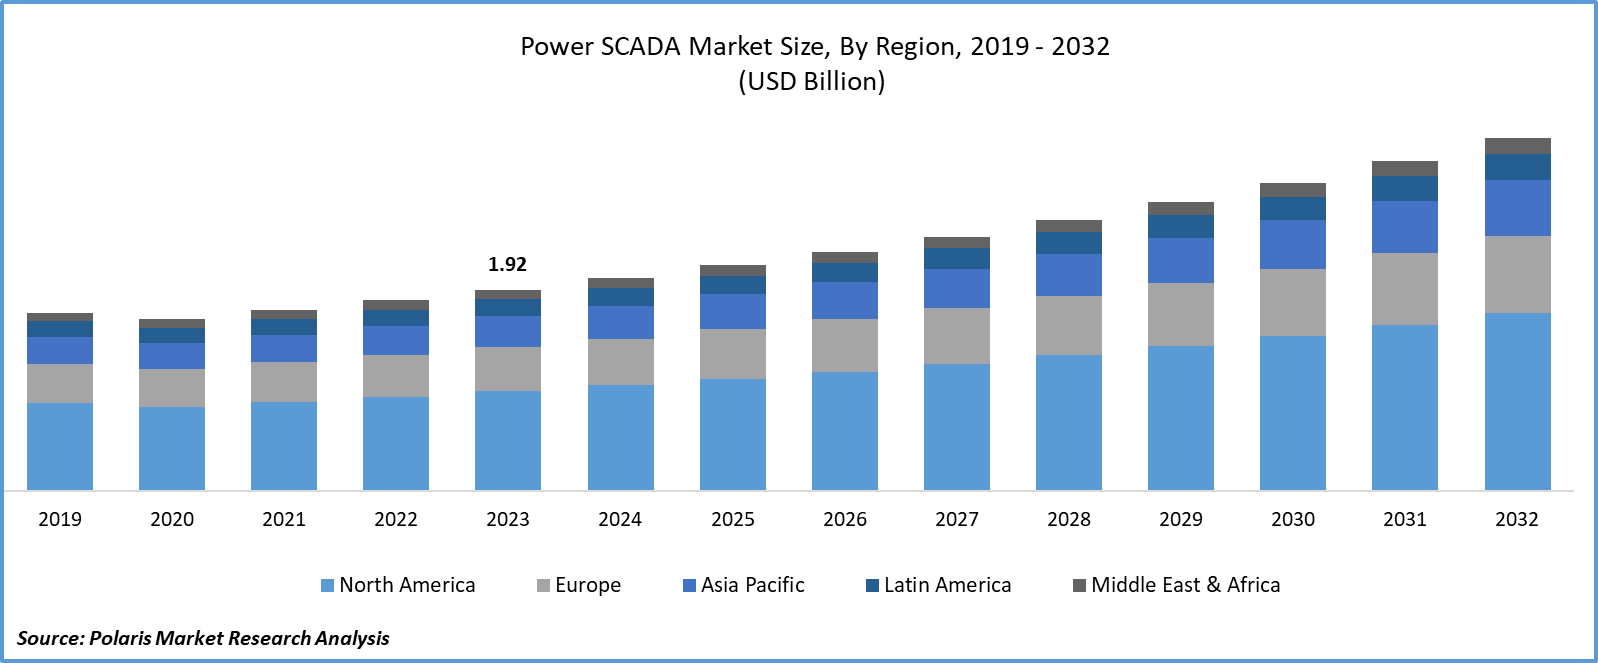 Power SCADA Market Size